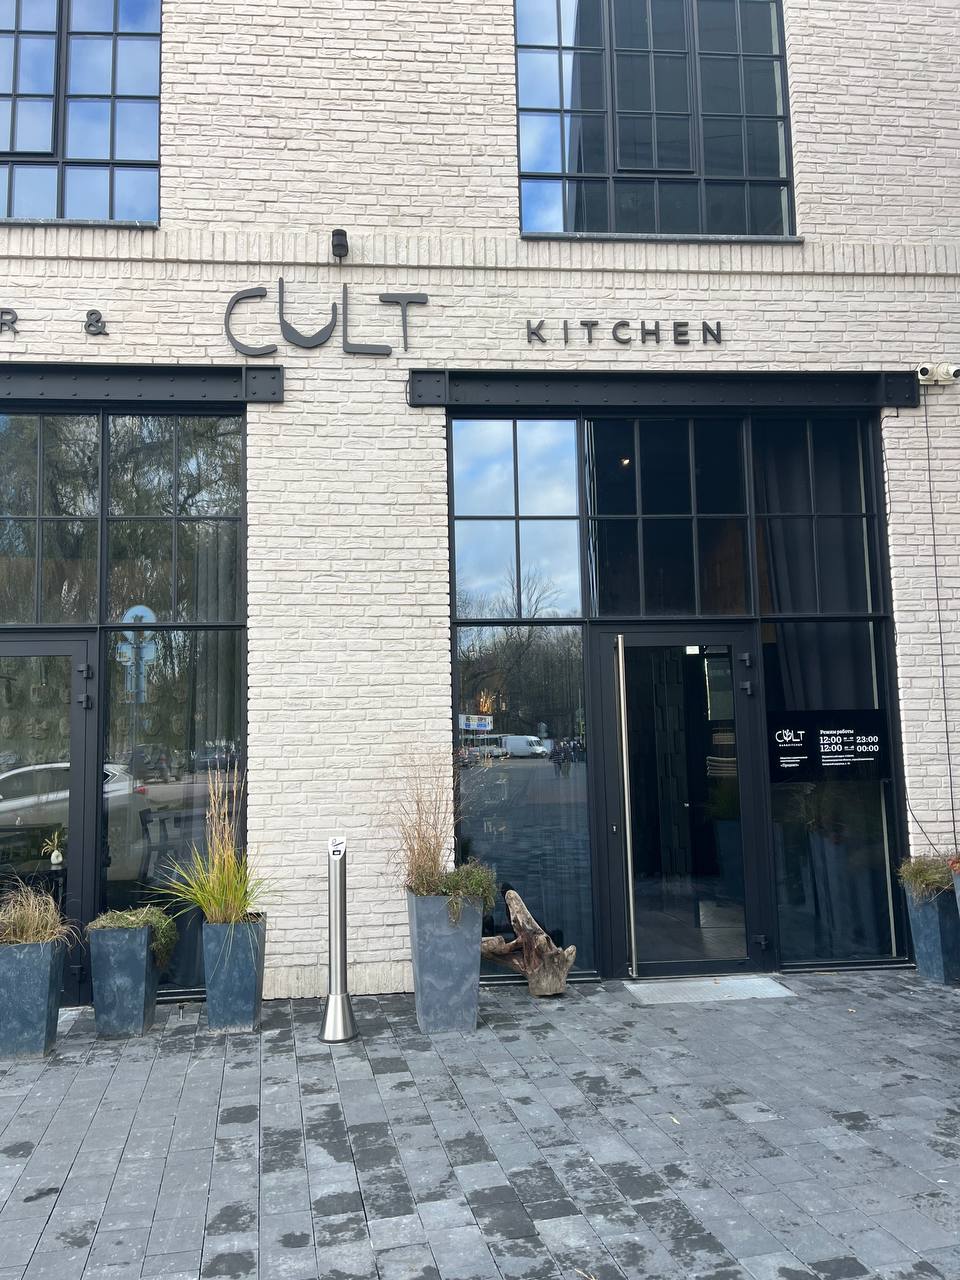 Cult Bar & Kitchen